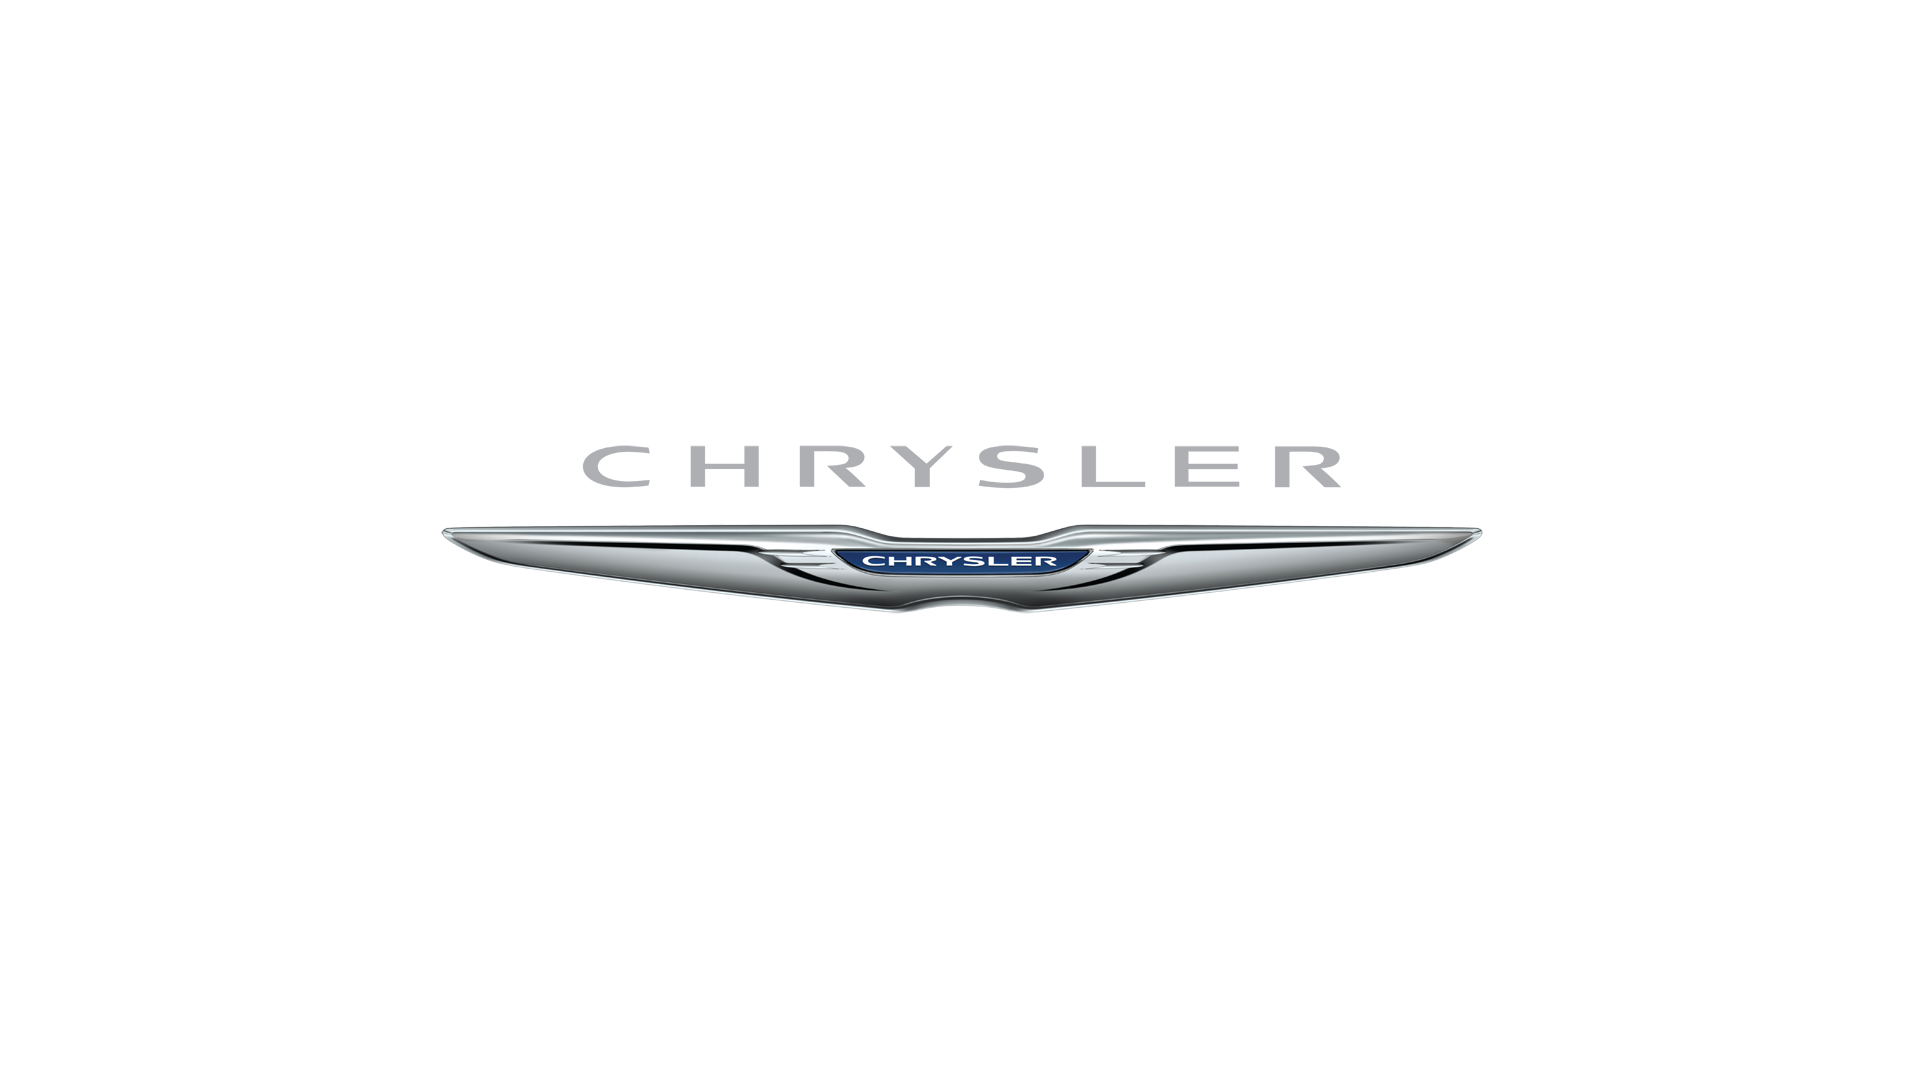 Chrysler-logo-2010-1920x1080.png